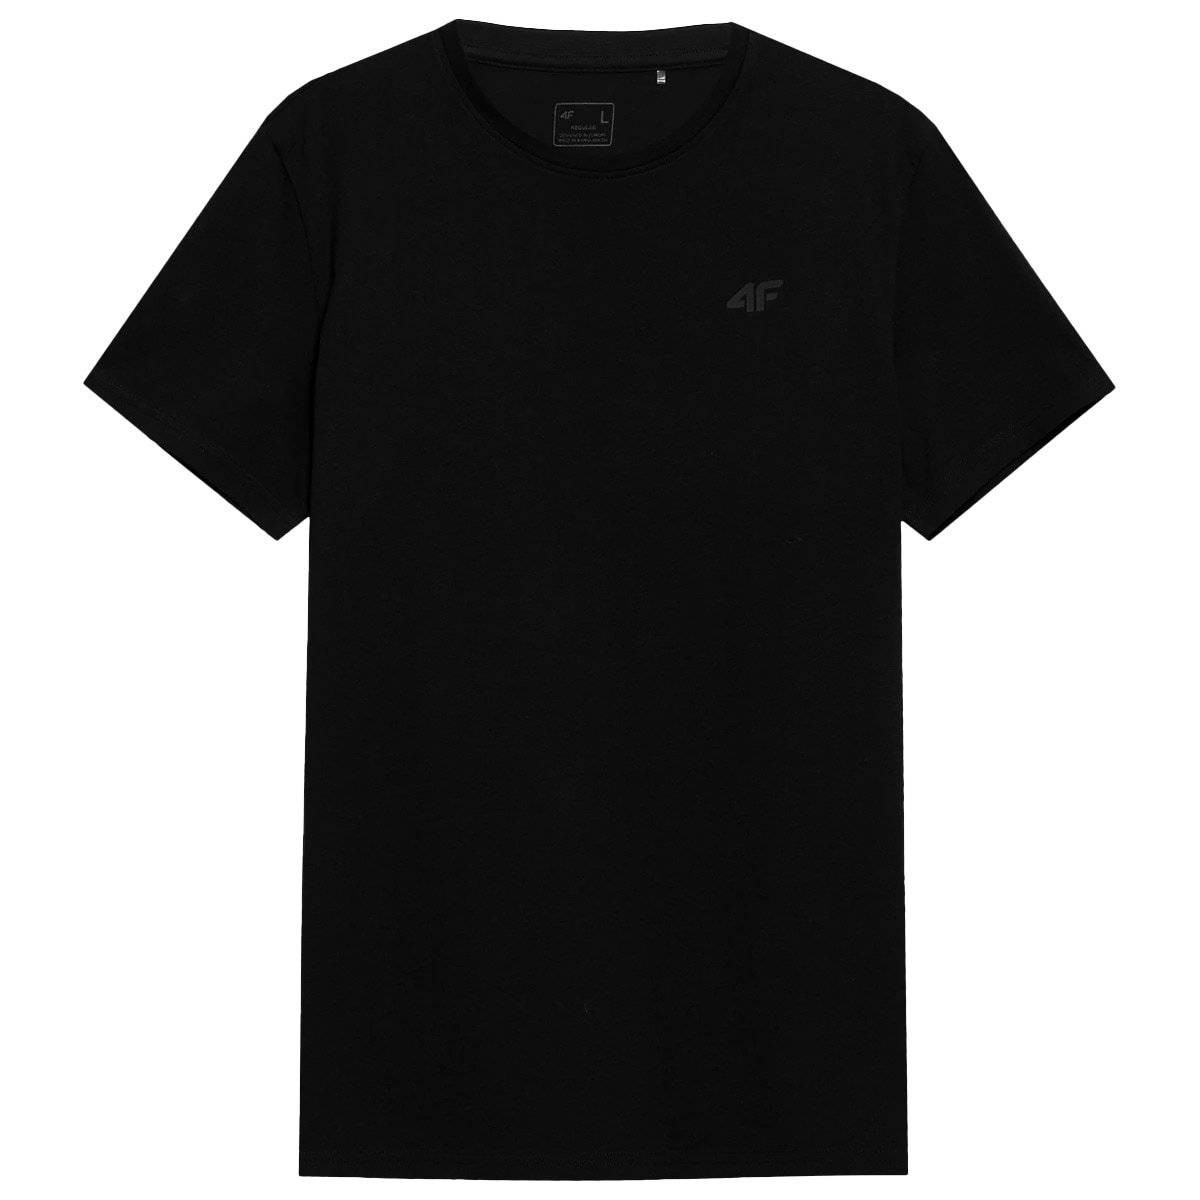 Футболка T-shirt 4F TTSHM536 Біла/Глибокий Чорний/Світло-сіра - 3 шт.